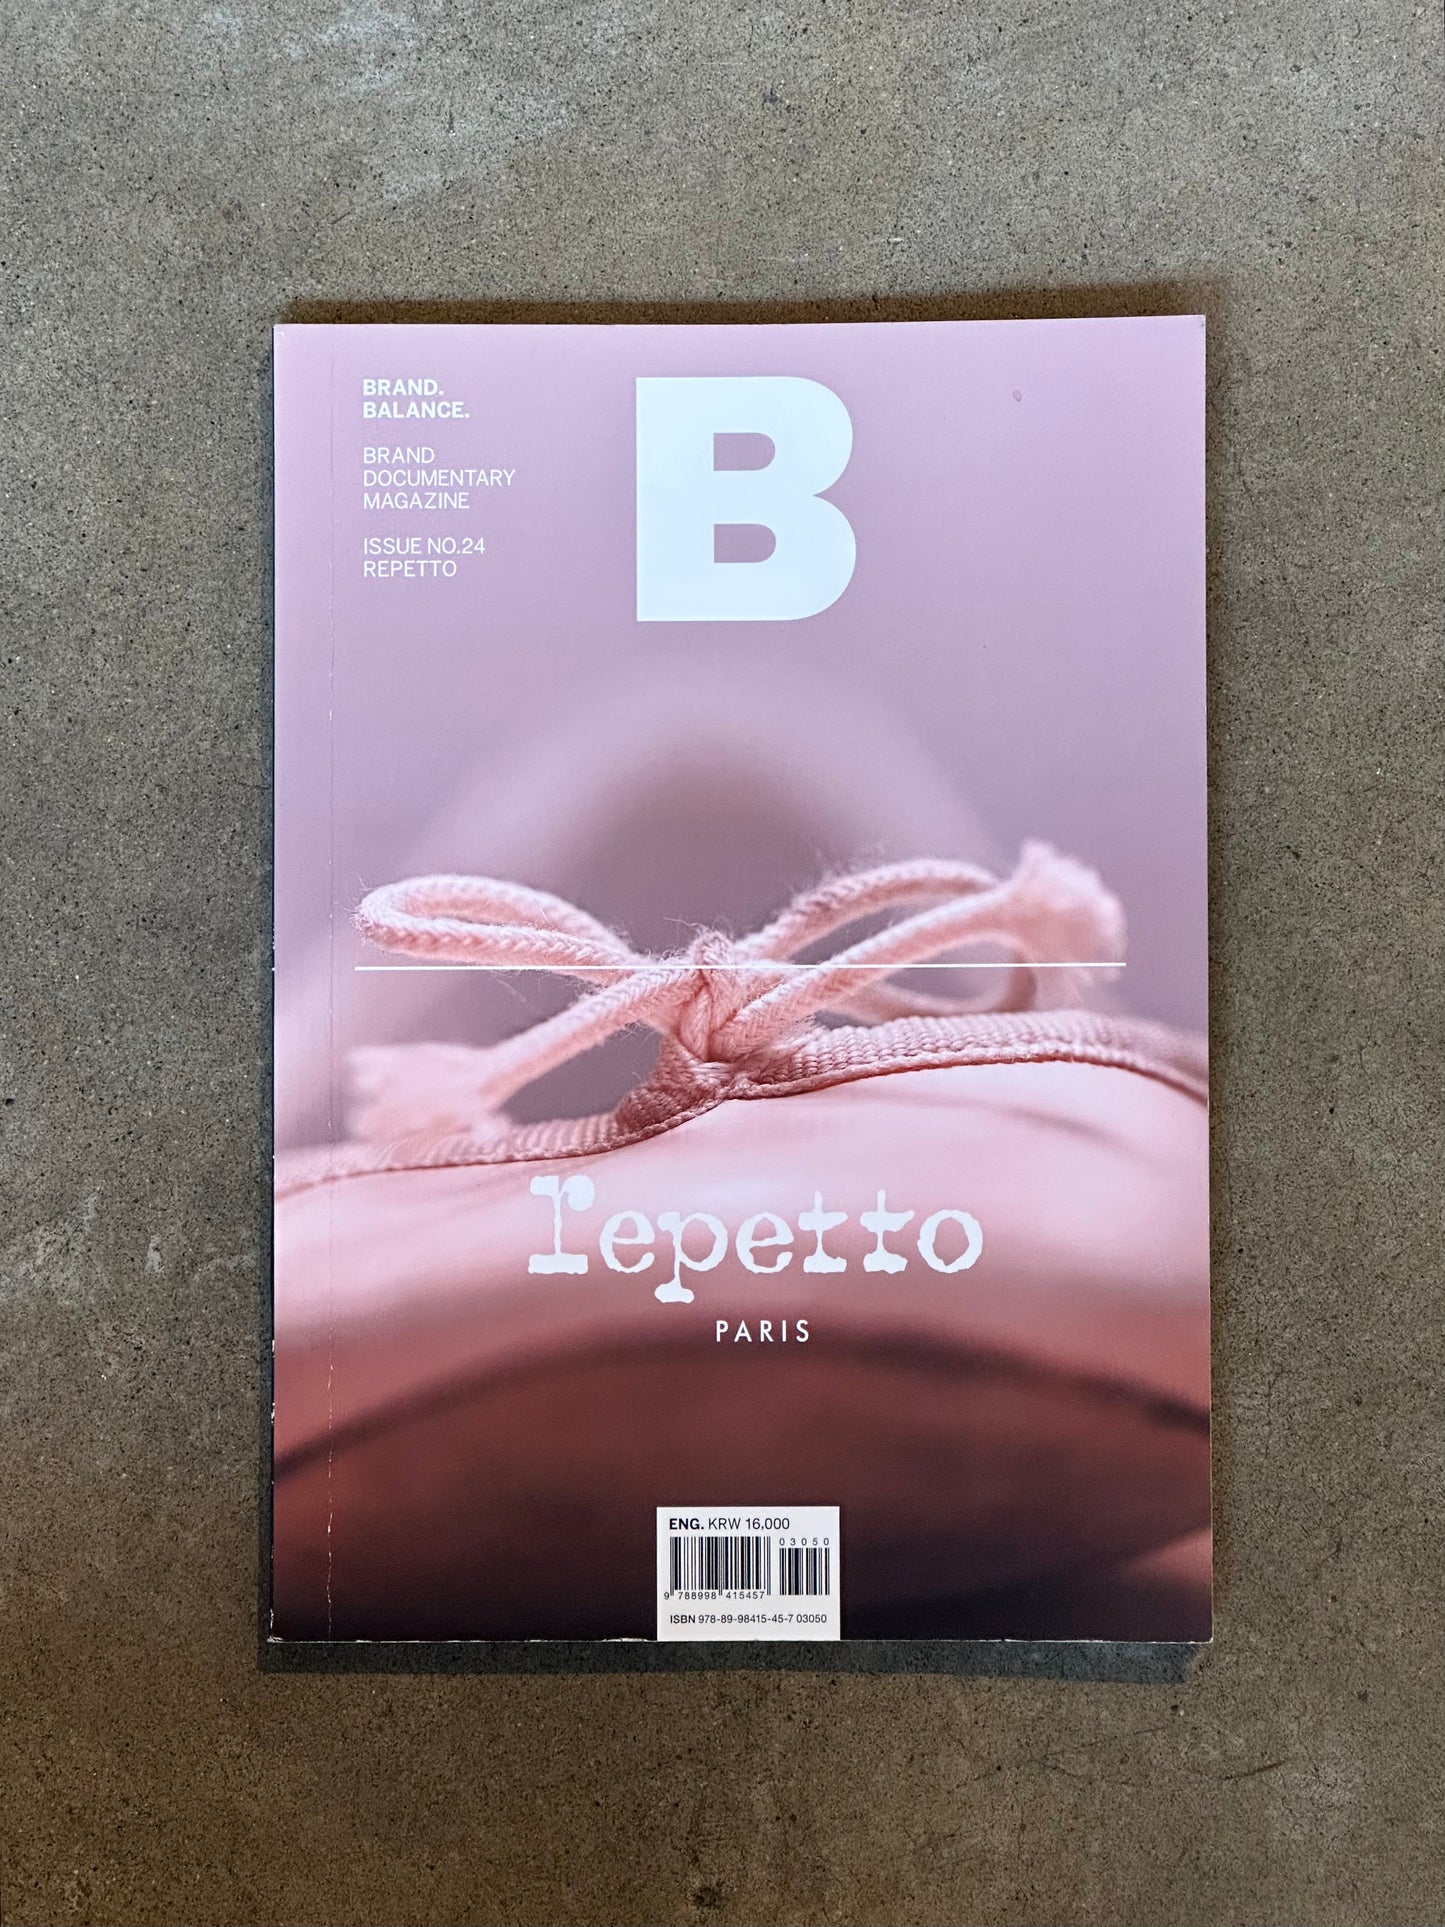 Magazine B - Repetto - Issue 24